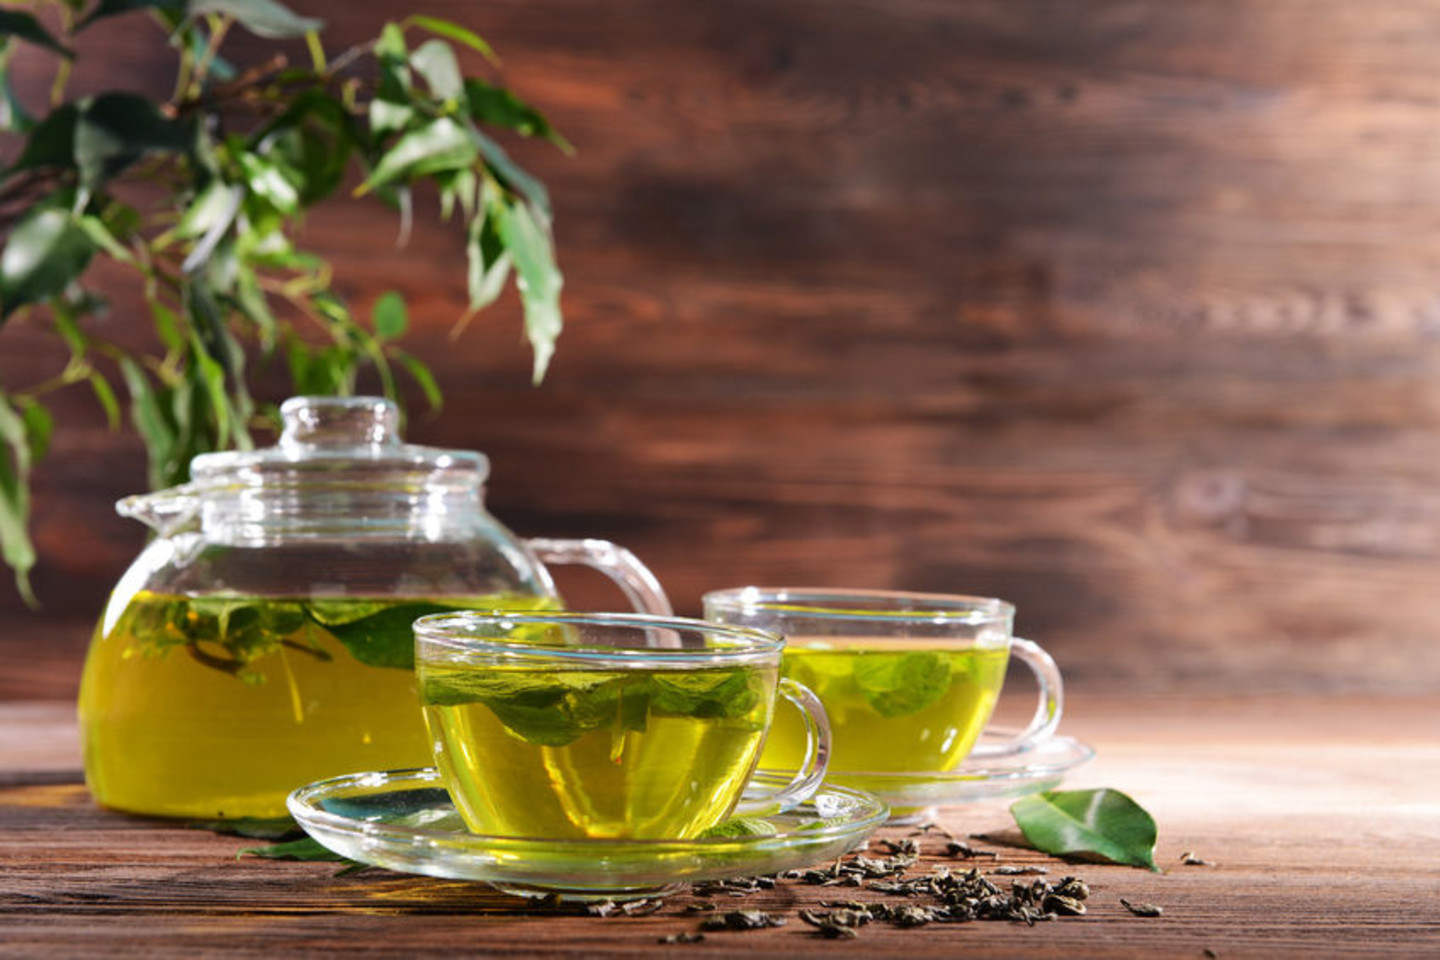  Žalioji arbata yra veiksminga dėl katechino polifenolių.<br> 123rf.com nuotr.